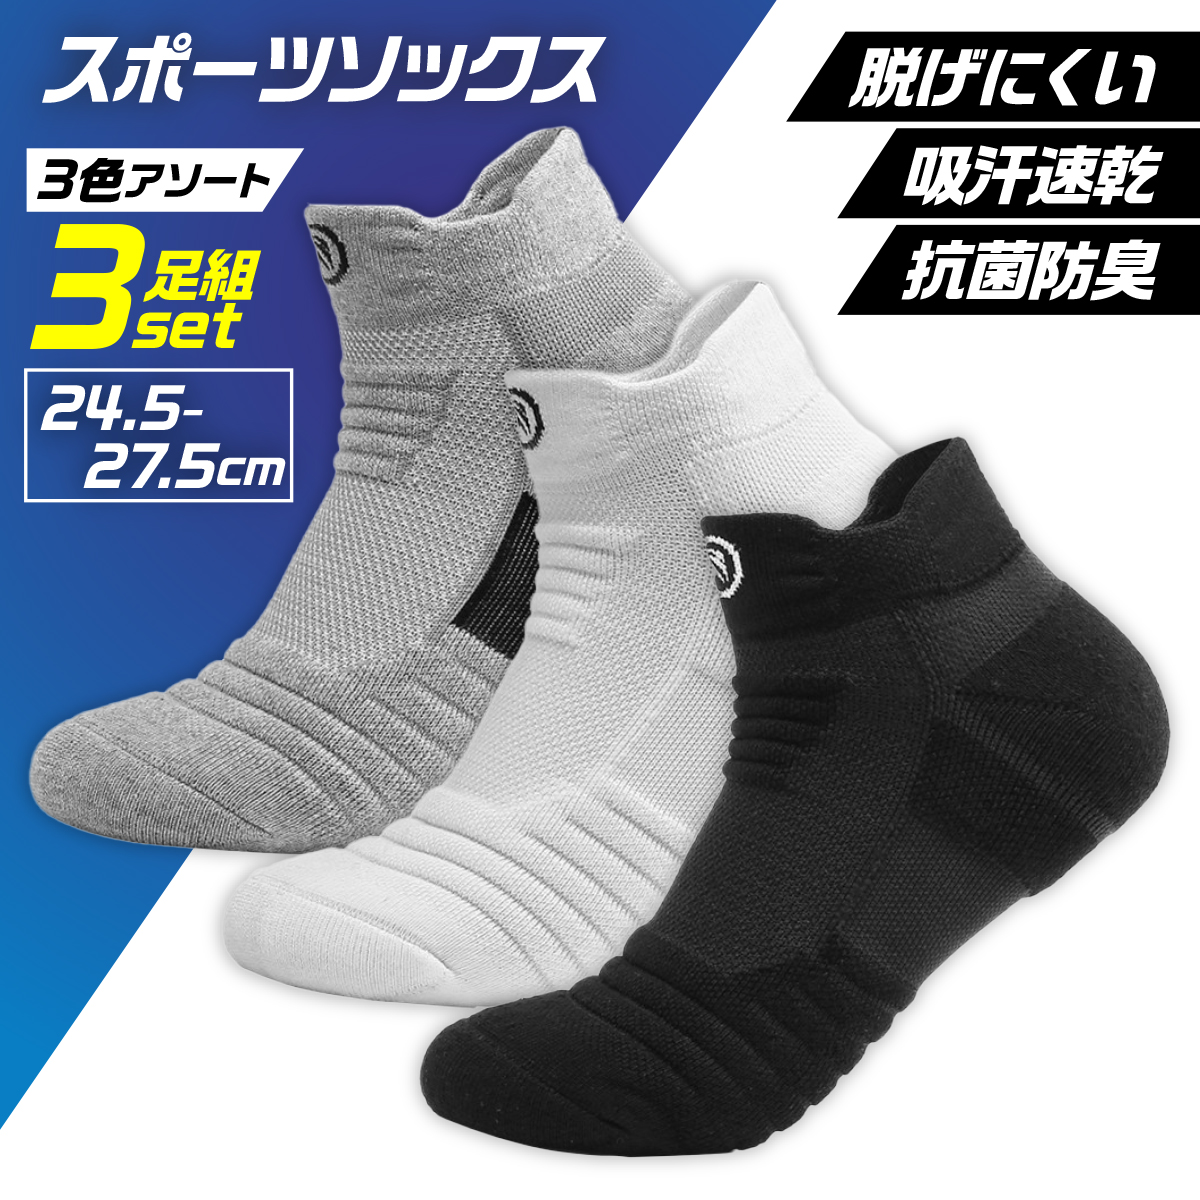 円高還元 3足セット靴下 ソックス メンズ 蒸れにくい 滑らない ショート スポーツ黒